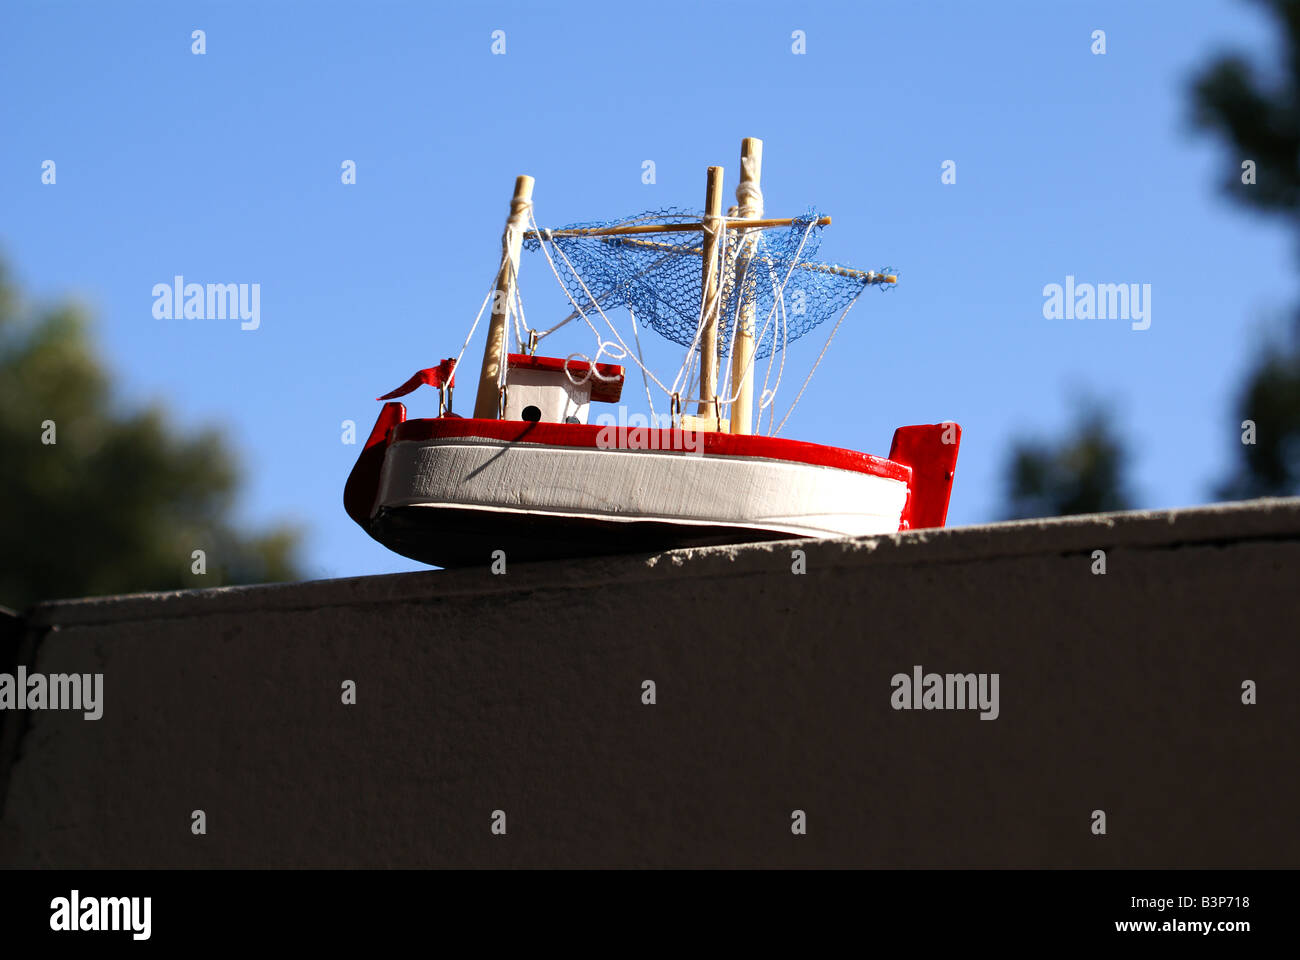 https://c8.alamy.com/comp/B3P718/a-small-toy-ship-placed-onto-a-fence-B3P718.jpg